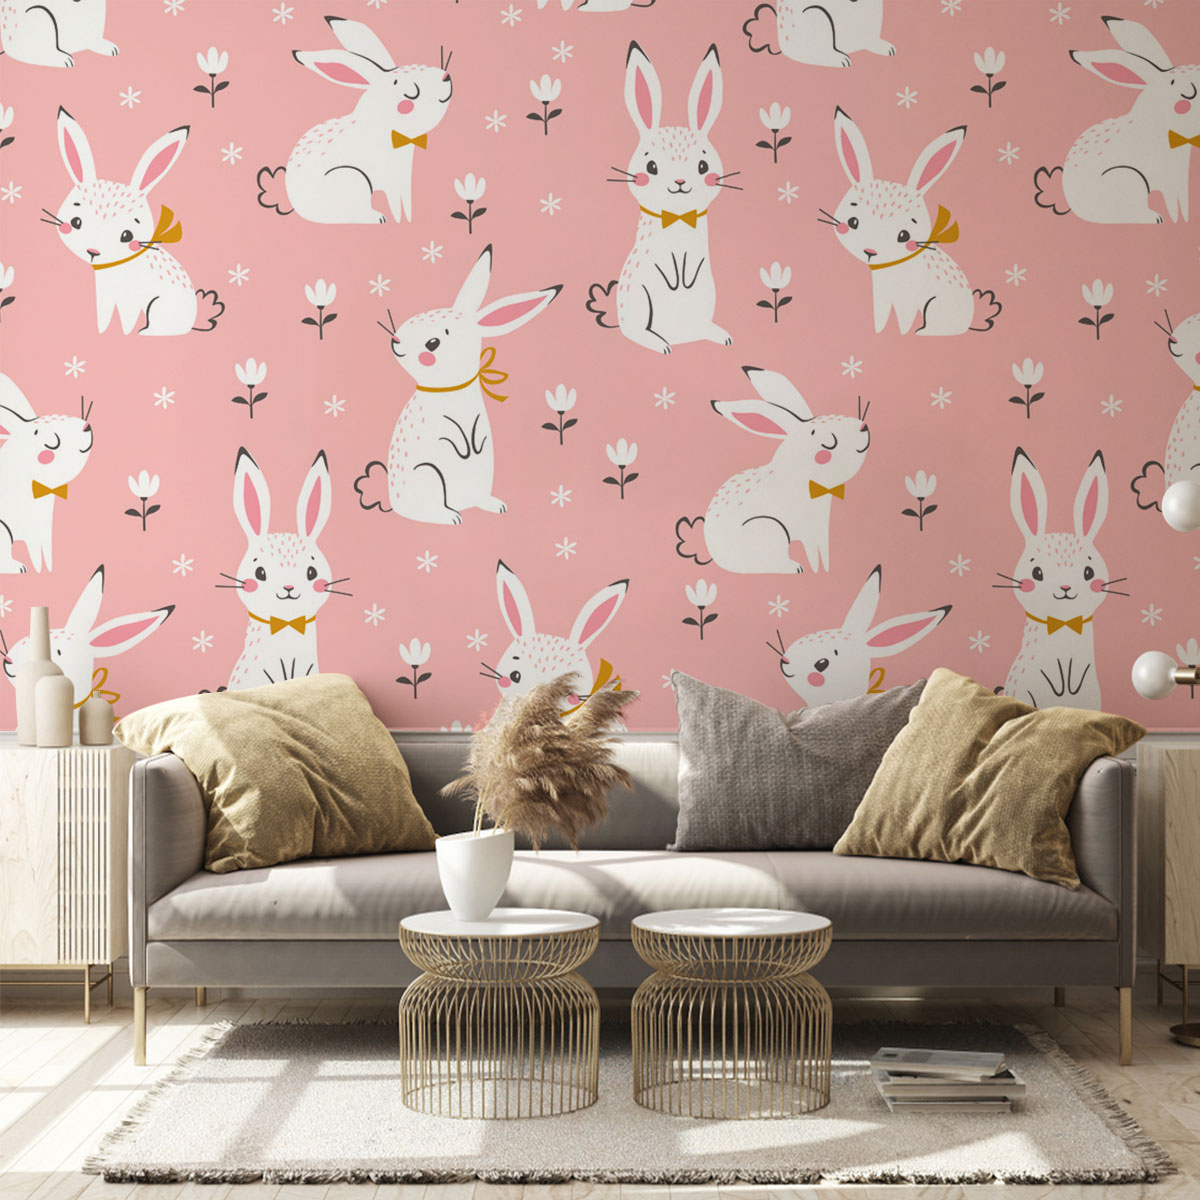 Cute Rabbit Wall Mural_1_2.1